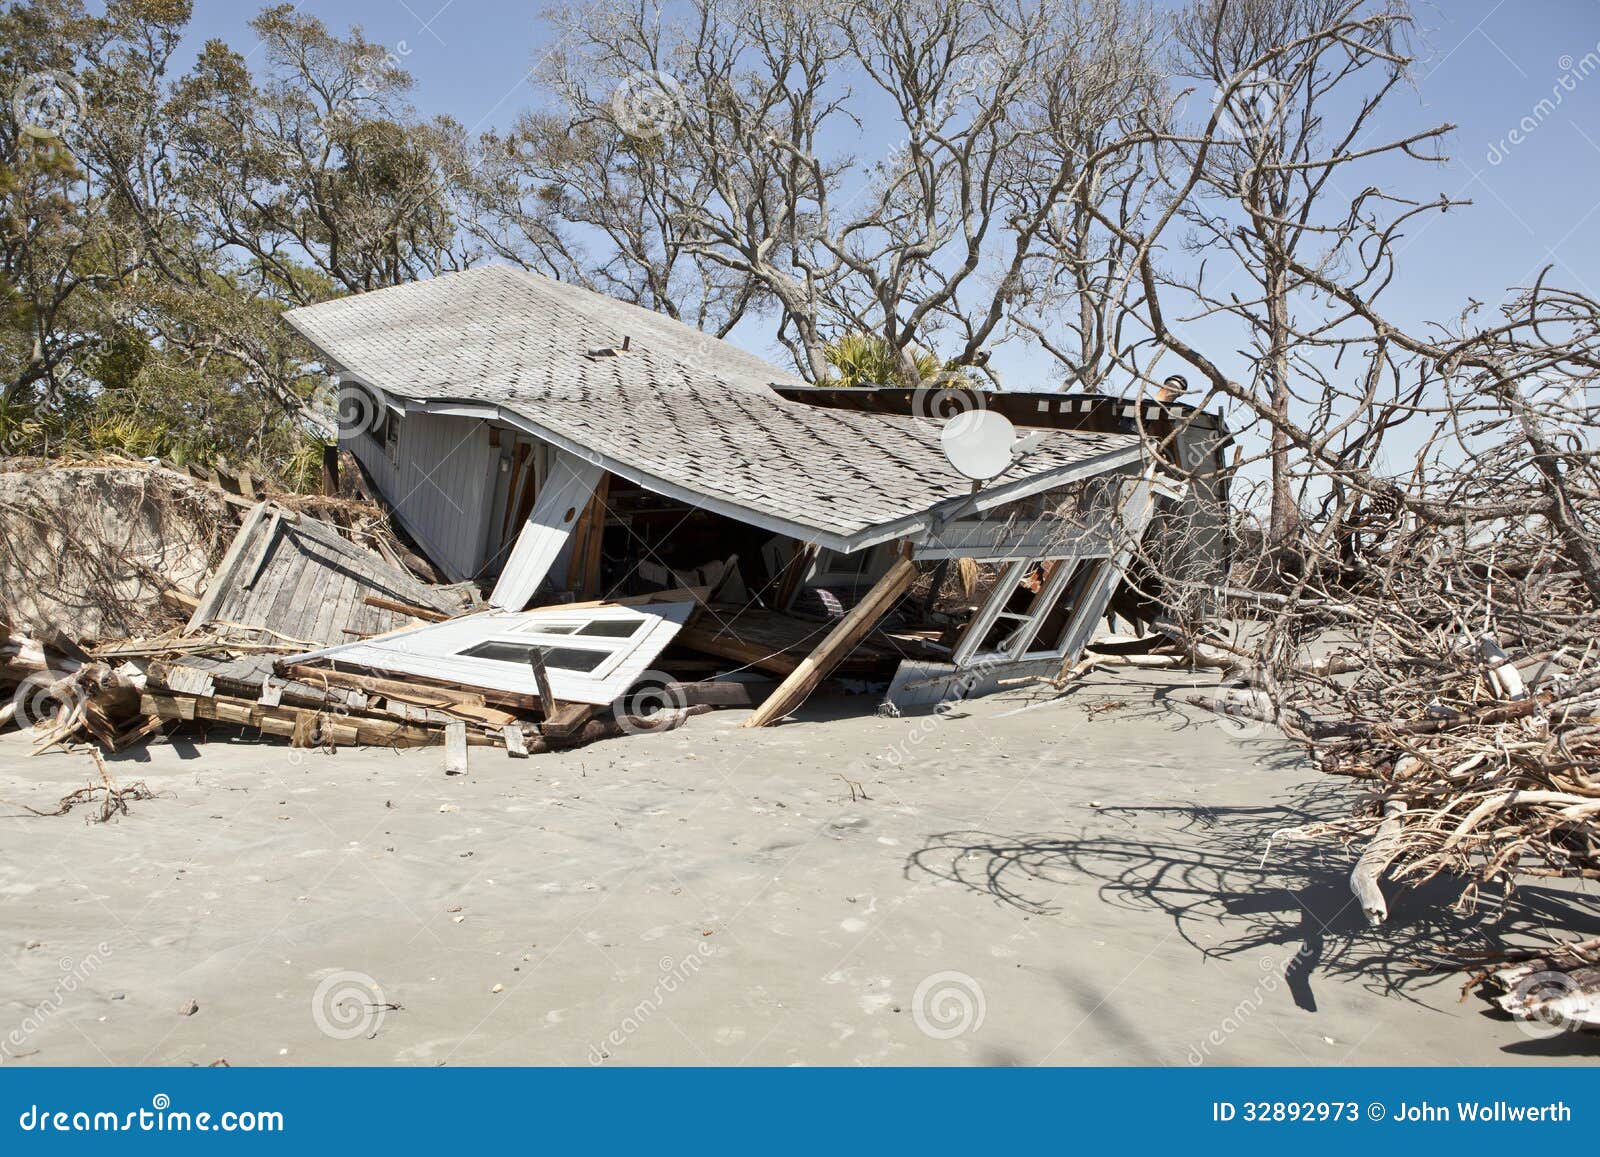 FANB - Venezuela crisis economica - Página 20 Casa-destruida-por-la-inundaci%C3%B3n-32892973